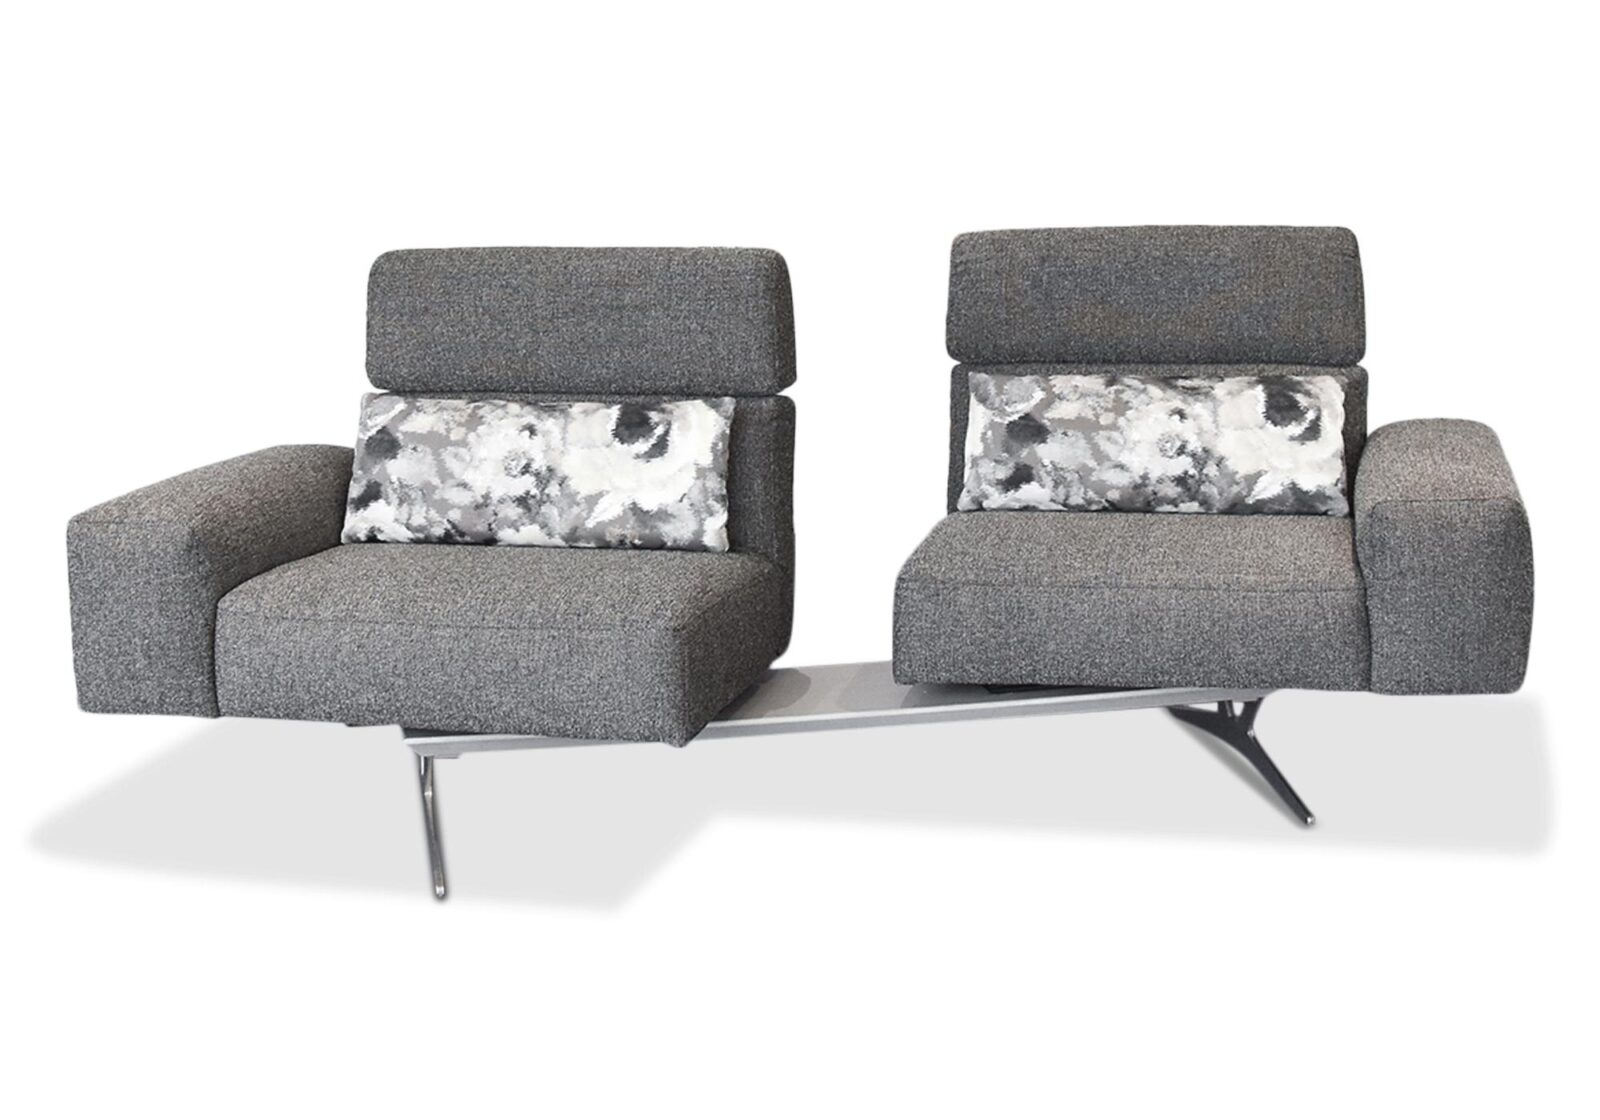 2.5er Sofa Monroe mit Drehstopp. Bezug: Stoff. Farbe: Grau. Erhältlich bei Möbel Gallati.